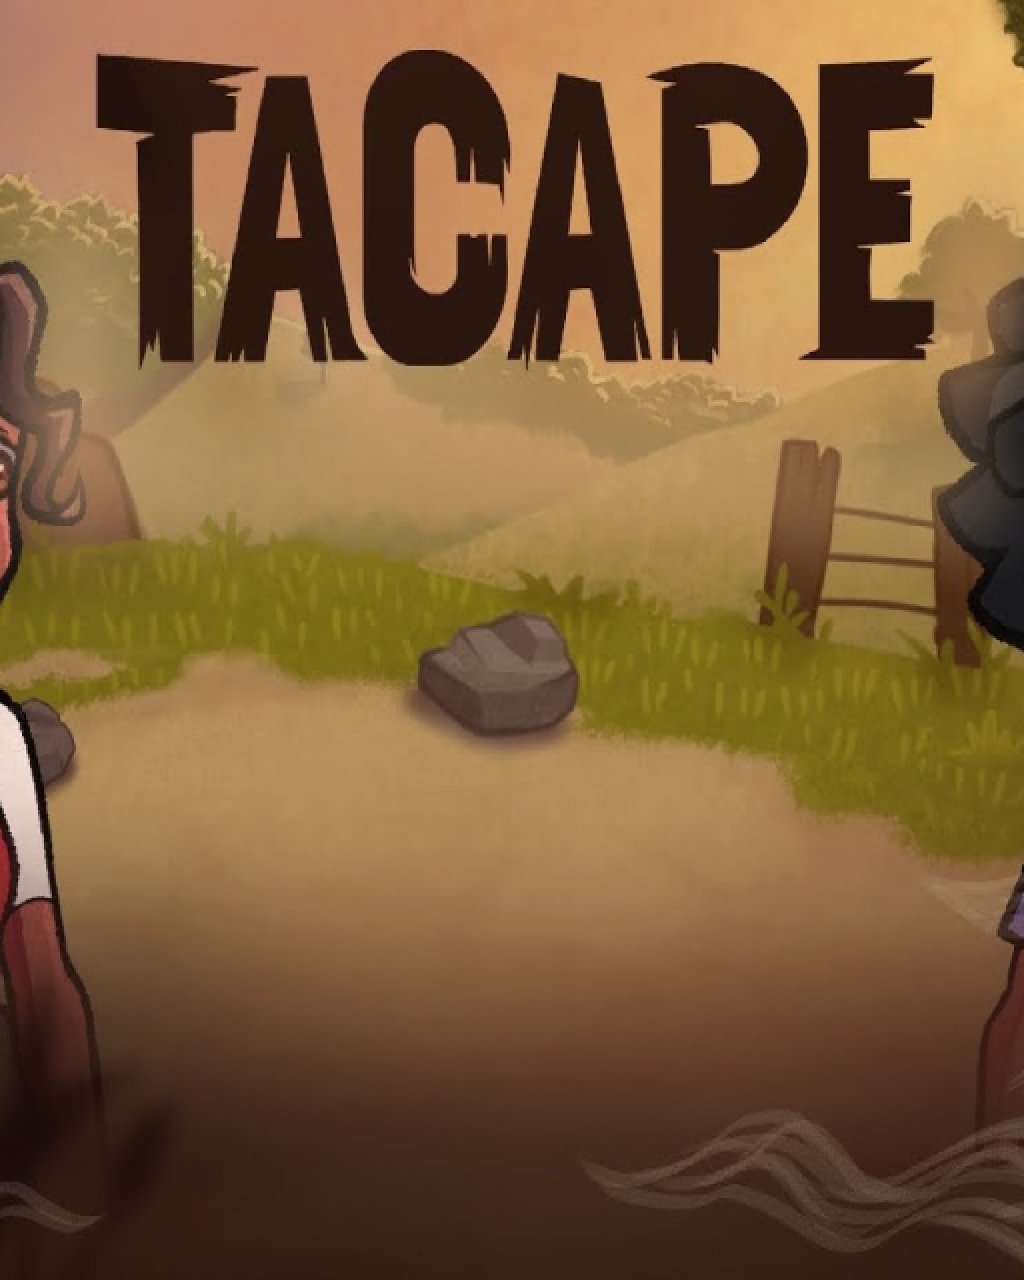 Tacape